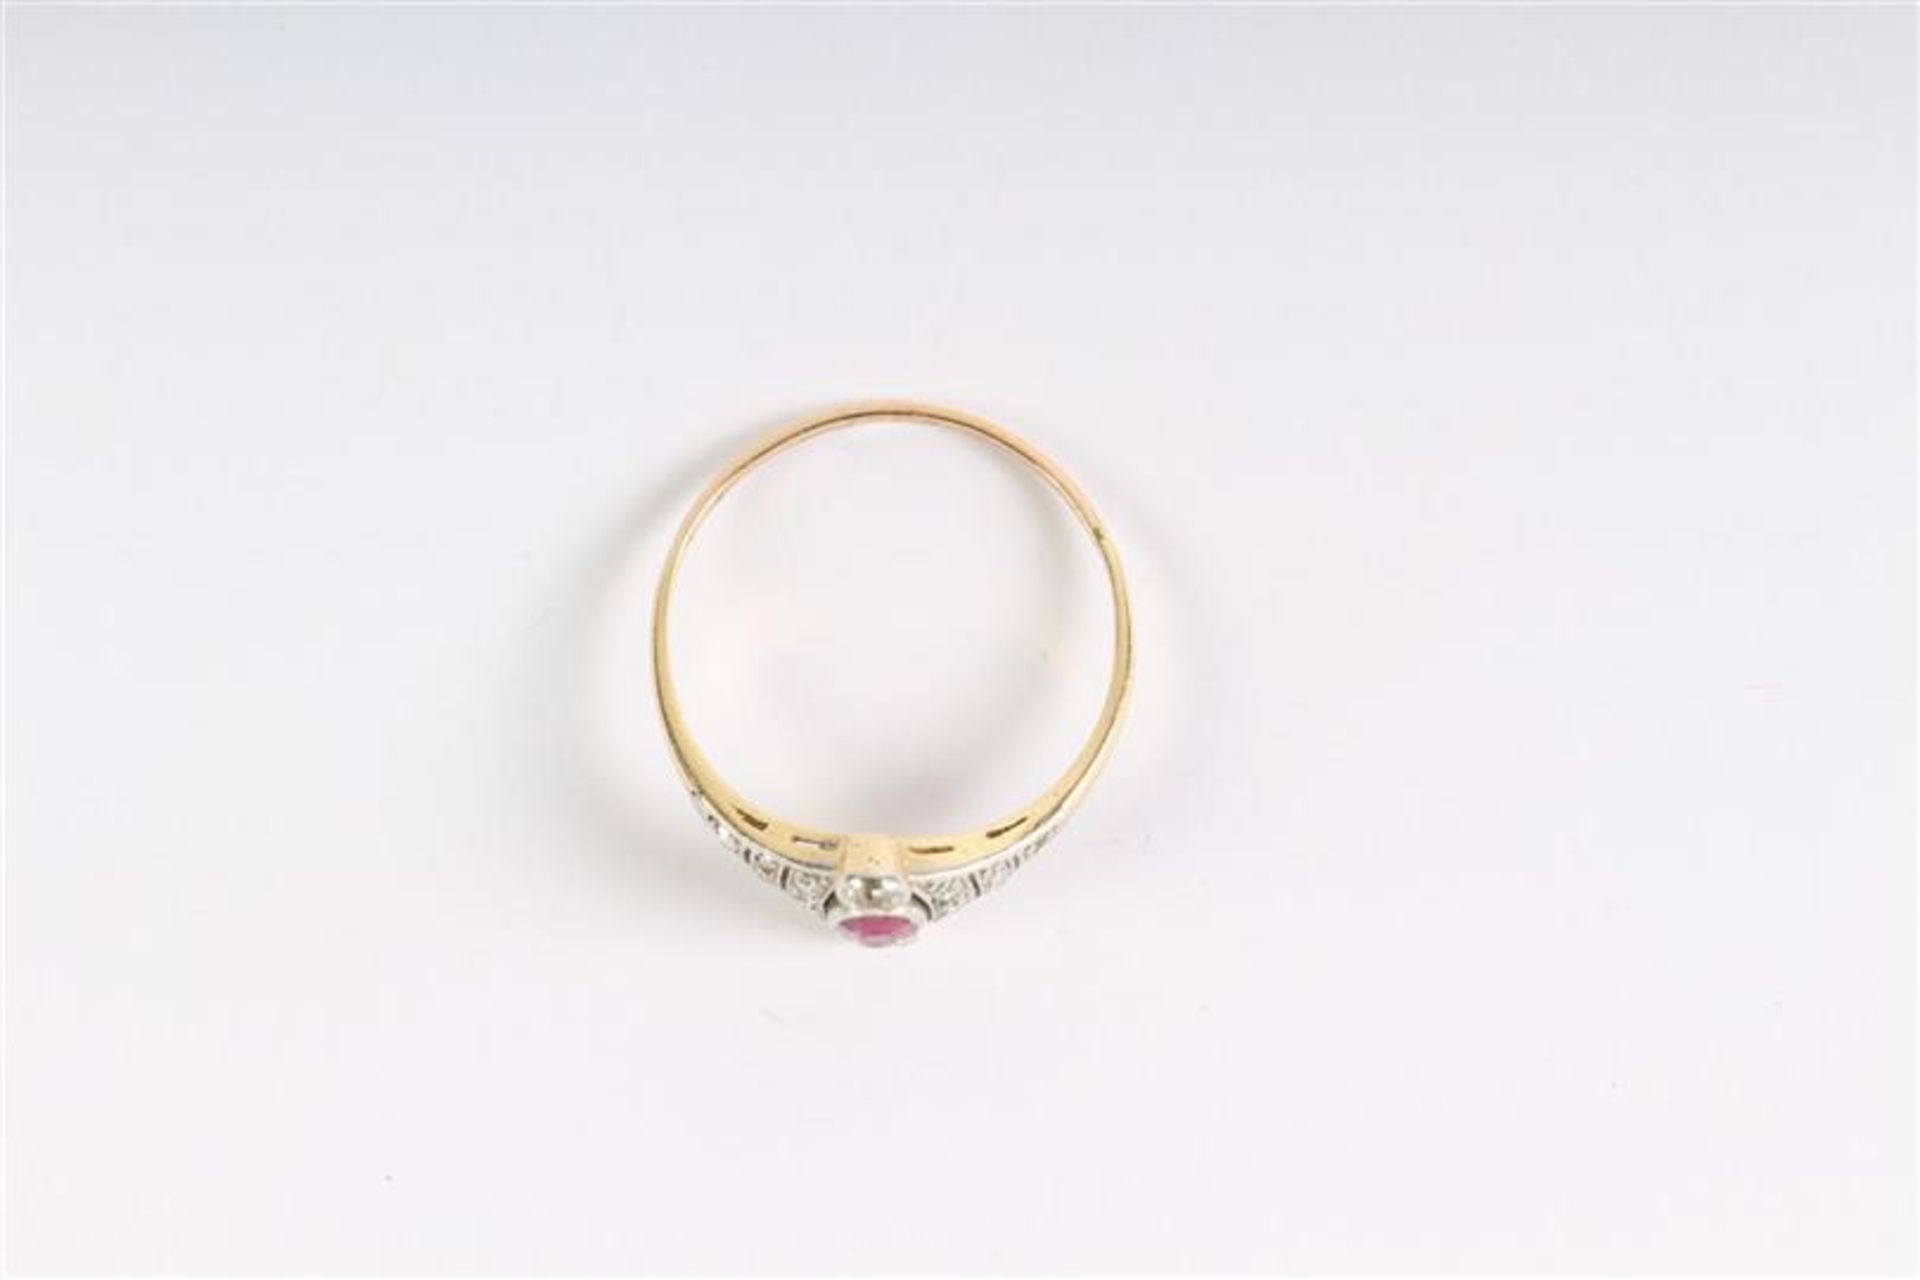 Gouden ring met diamant en robijn. Gewicht: 2.2 g. Ringmaat: 19.25. - Bild 2 aus 4